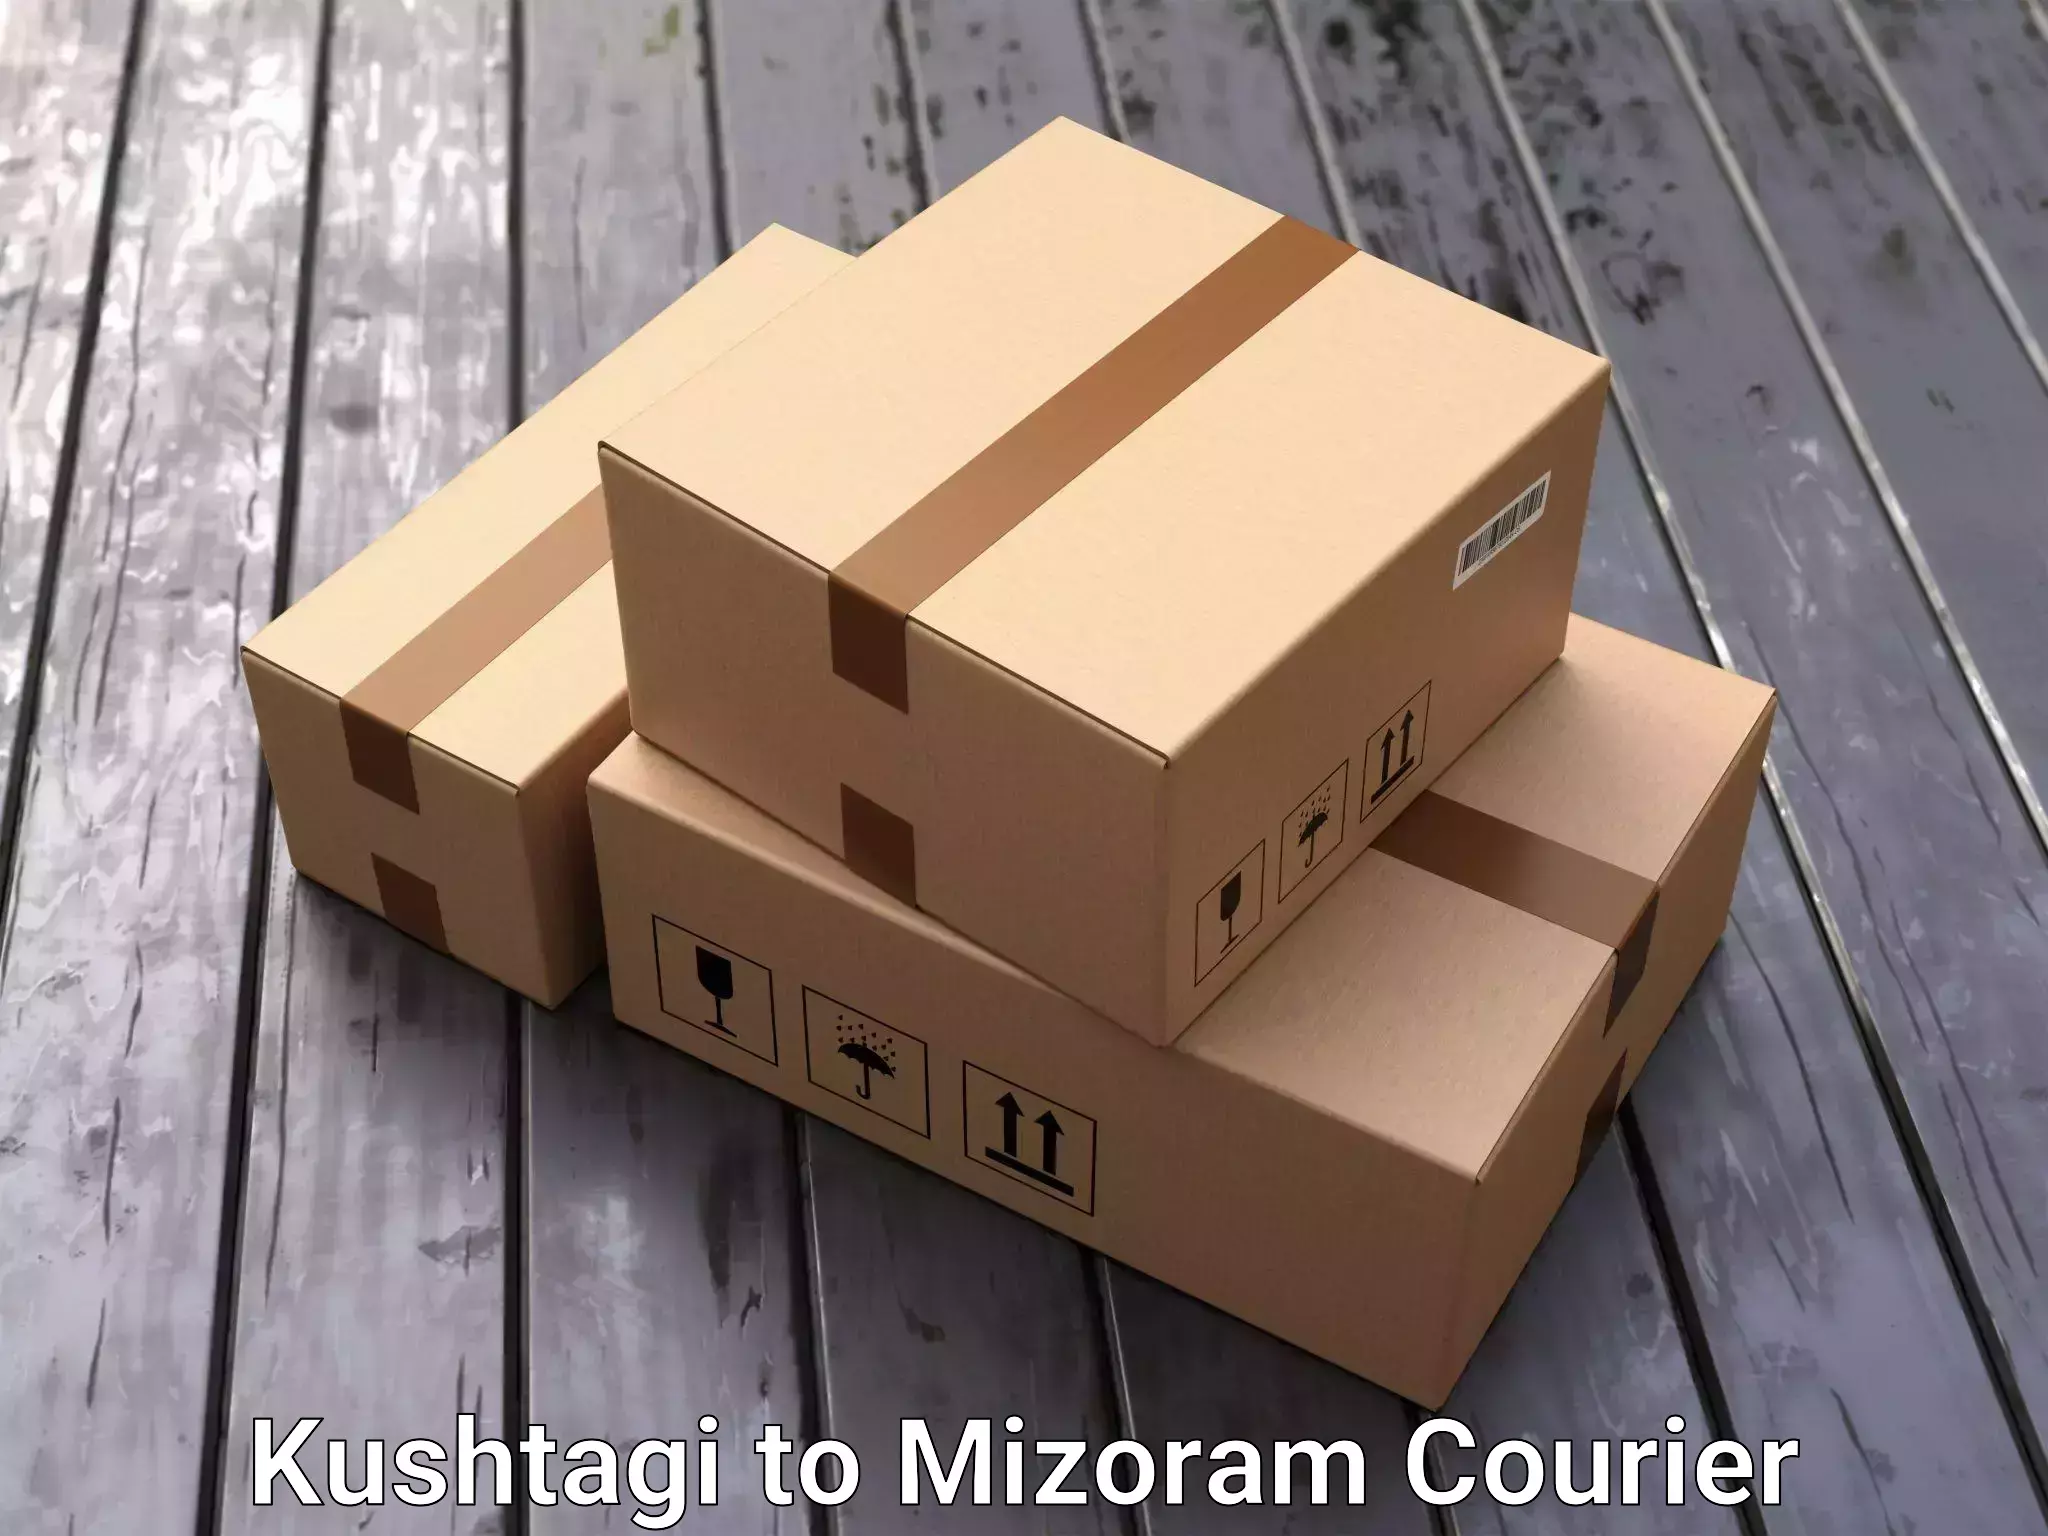 Budget-friendly movers Kushtagi to Mizoram